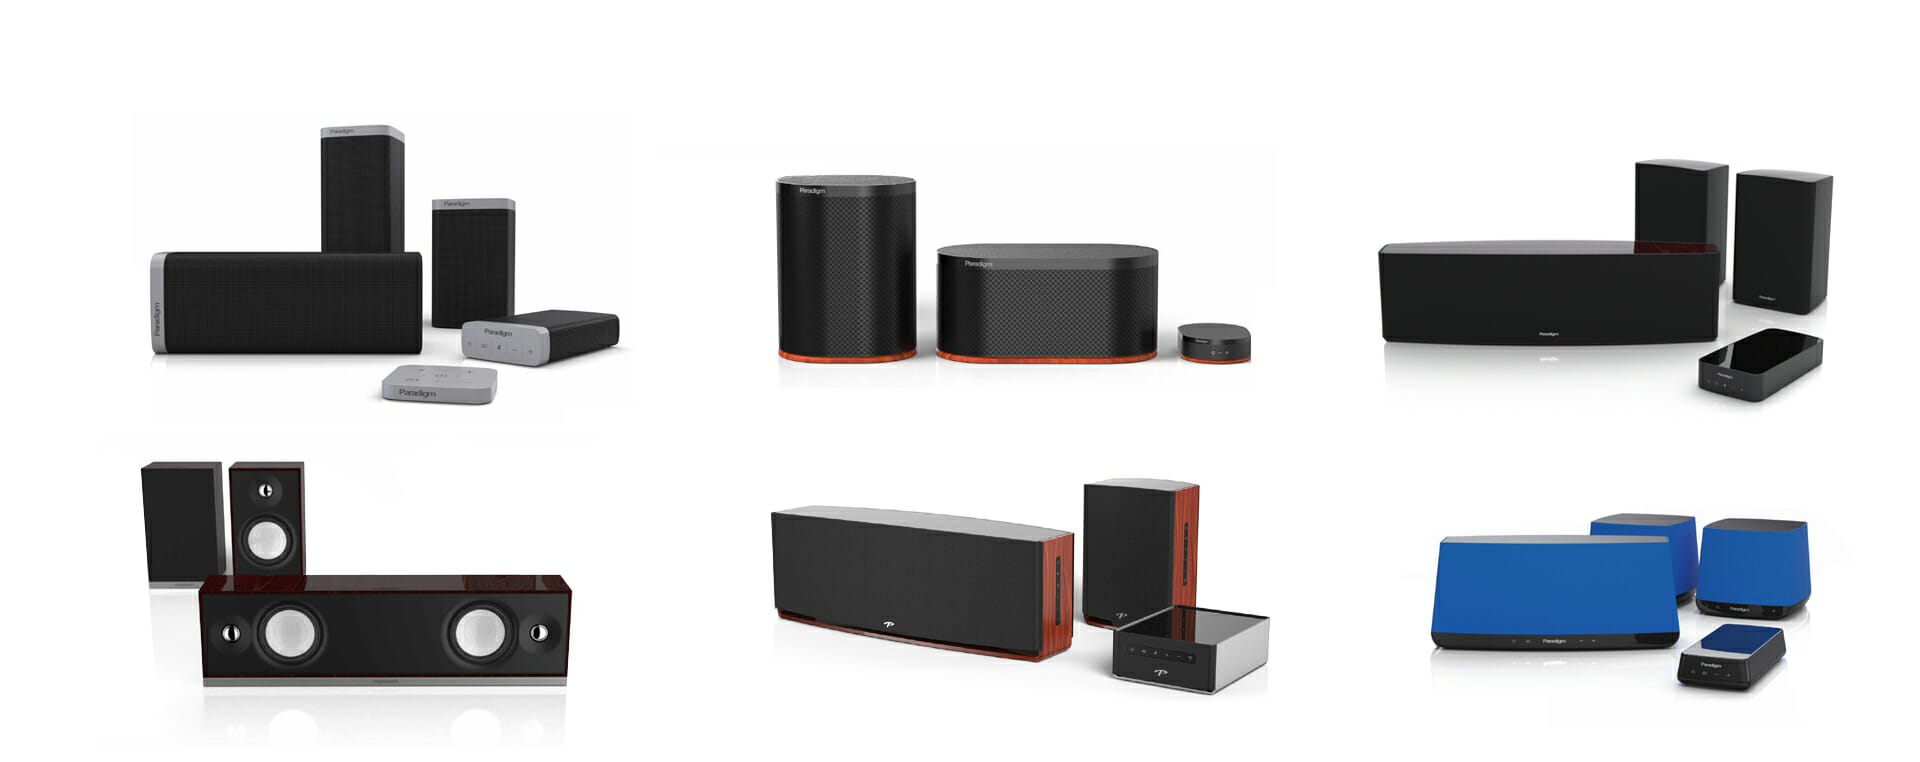 Wireless speaker industrial design concept renderings